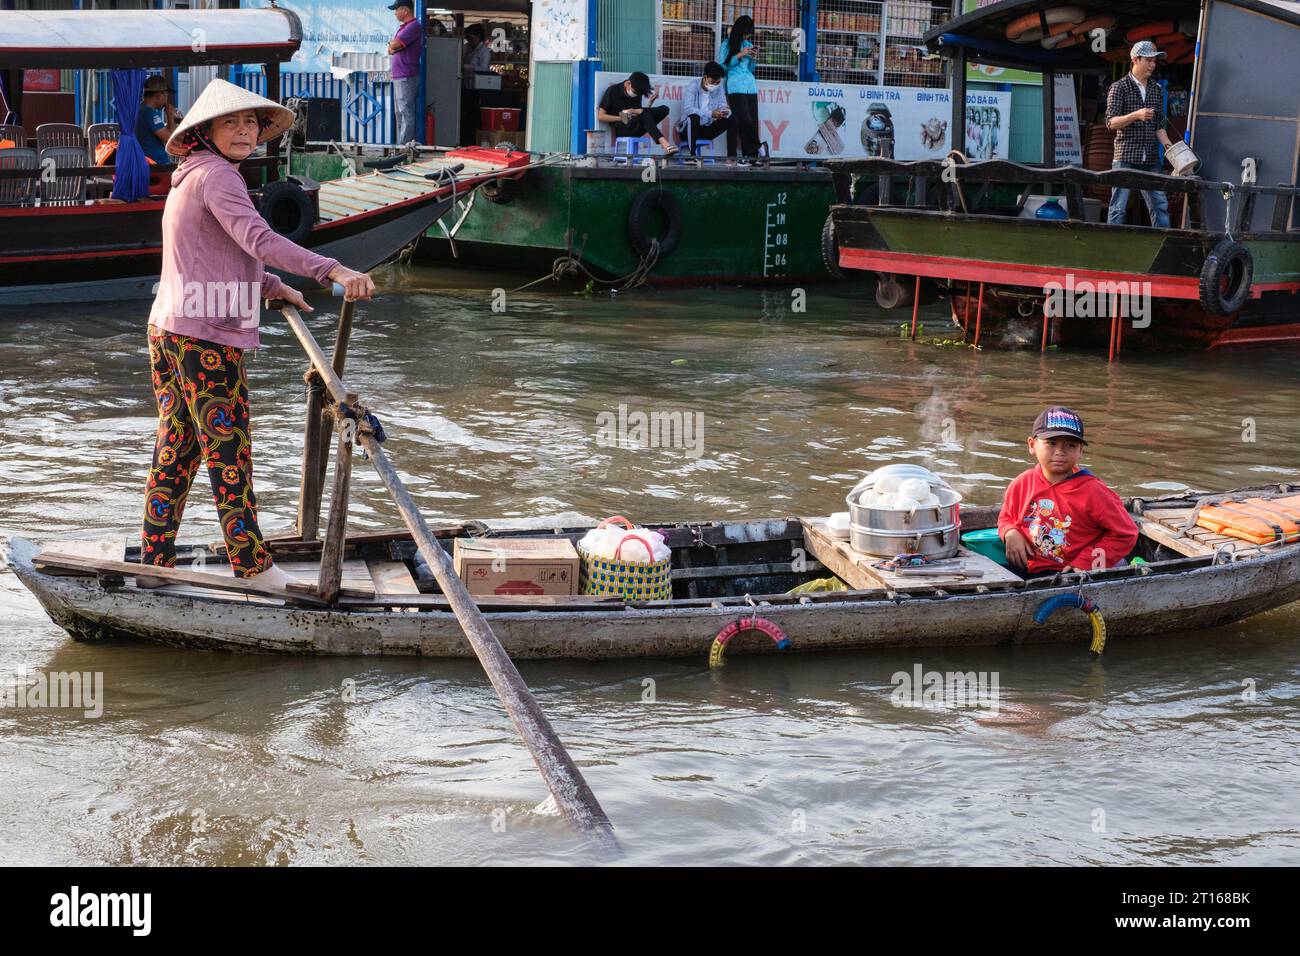 Scène du marché flottant de Fong Dien, près de CAN Tho, Vietnam. Vendor of Breakfast Items circule avec son fils parmi les bateaux transportant des touristes. Banque D'Images